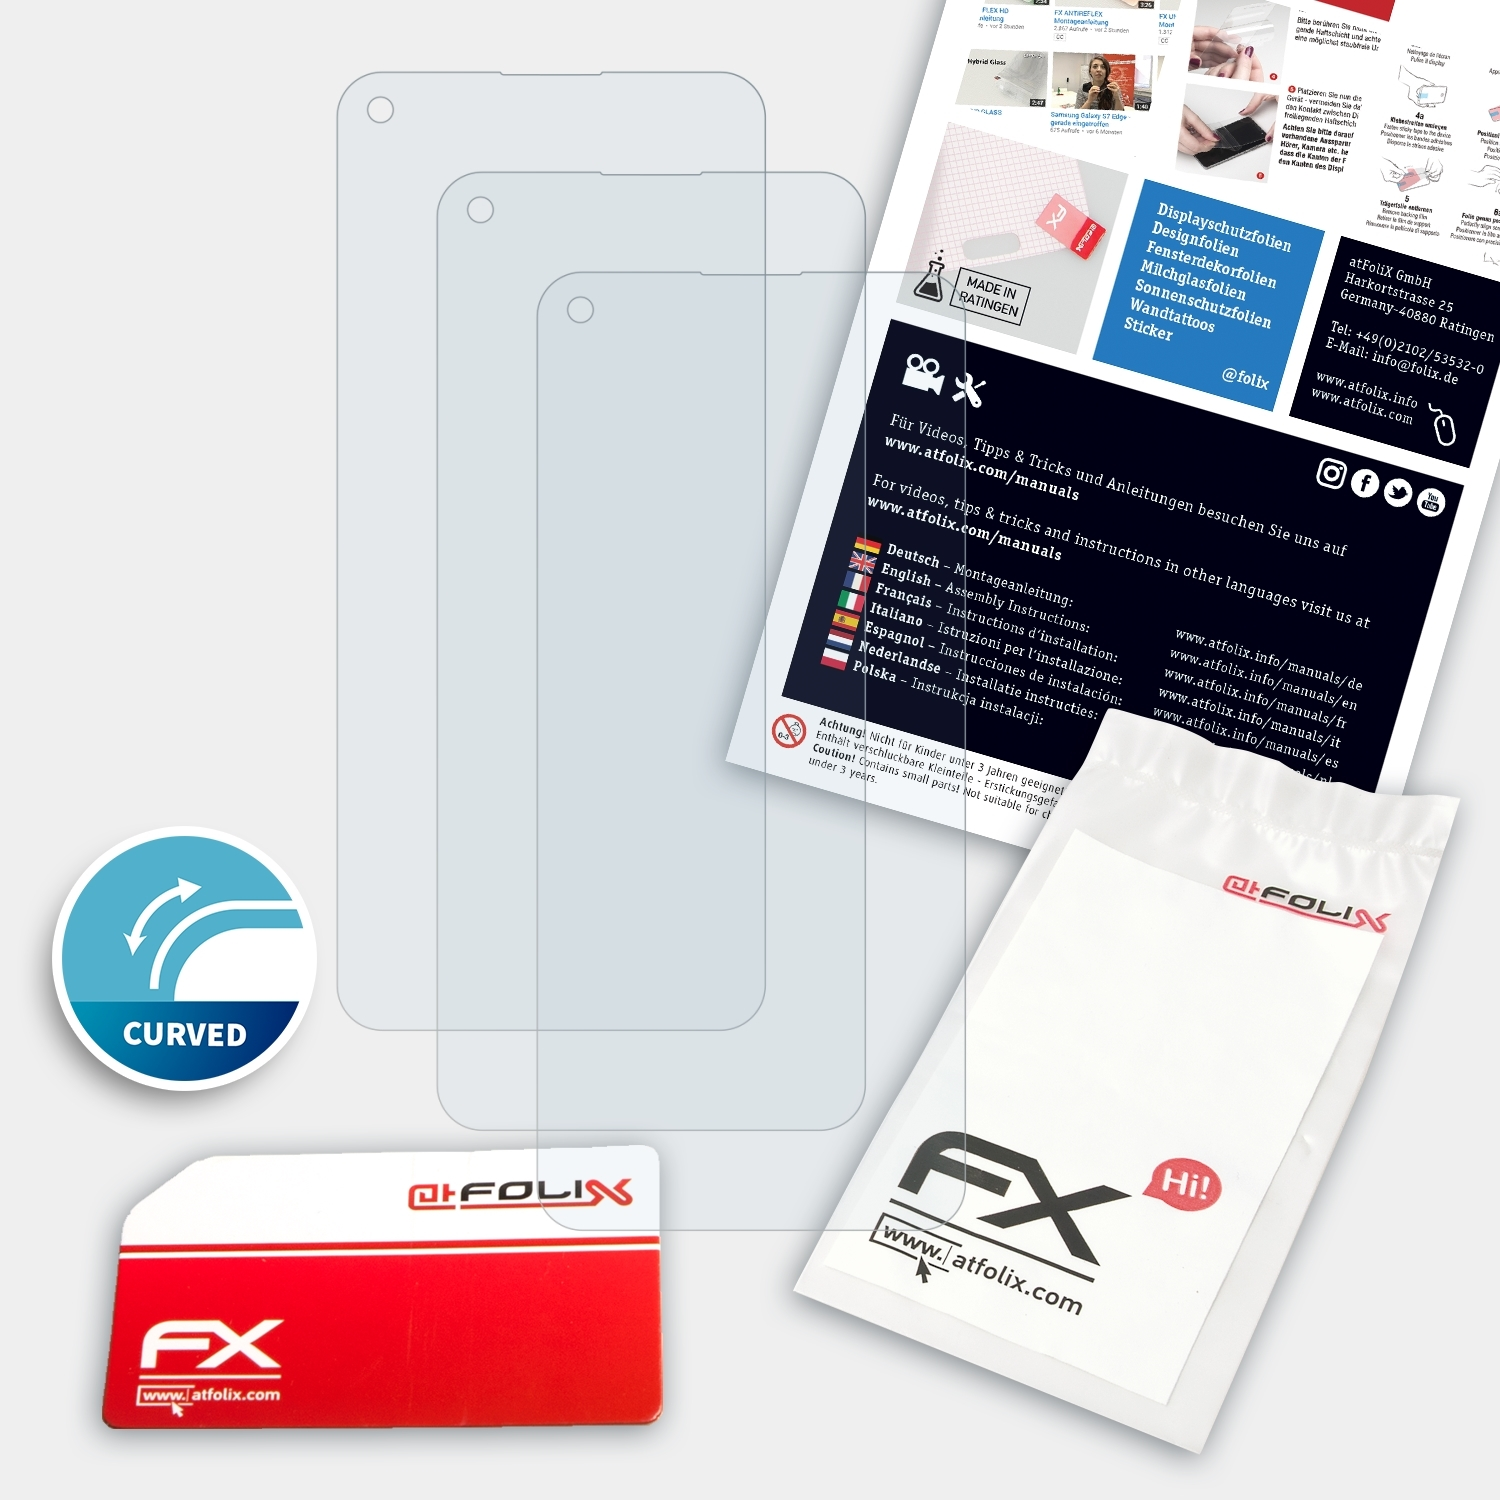 ATFOLIX 3x FX-ActiFleX A94 Displayschutz(für 5G) Oppo